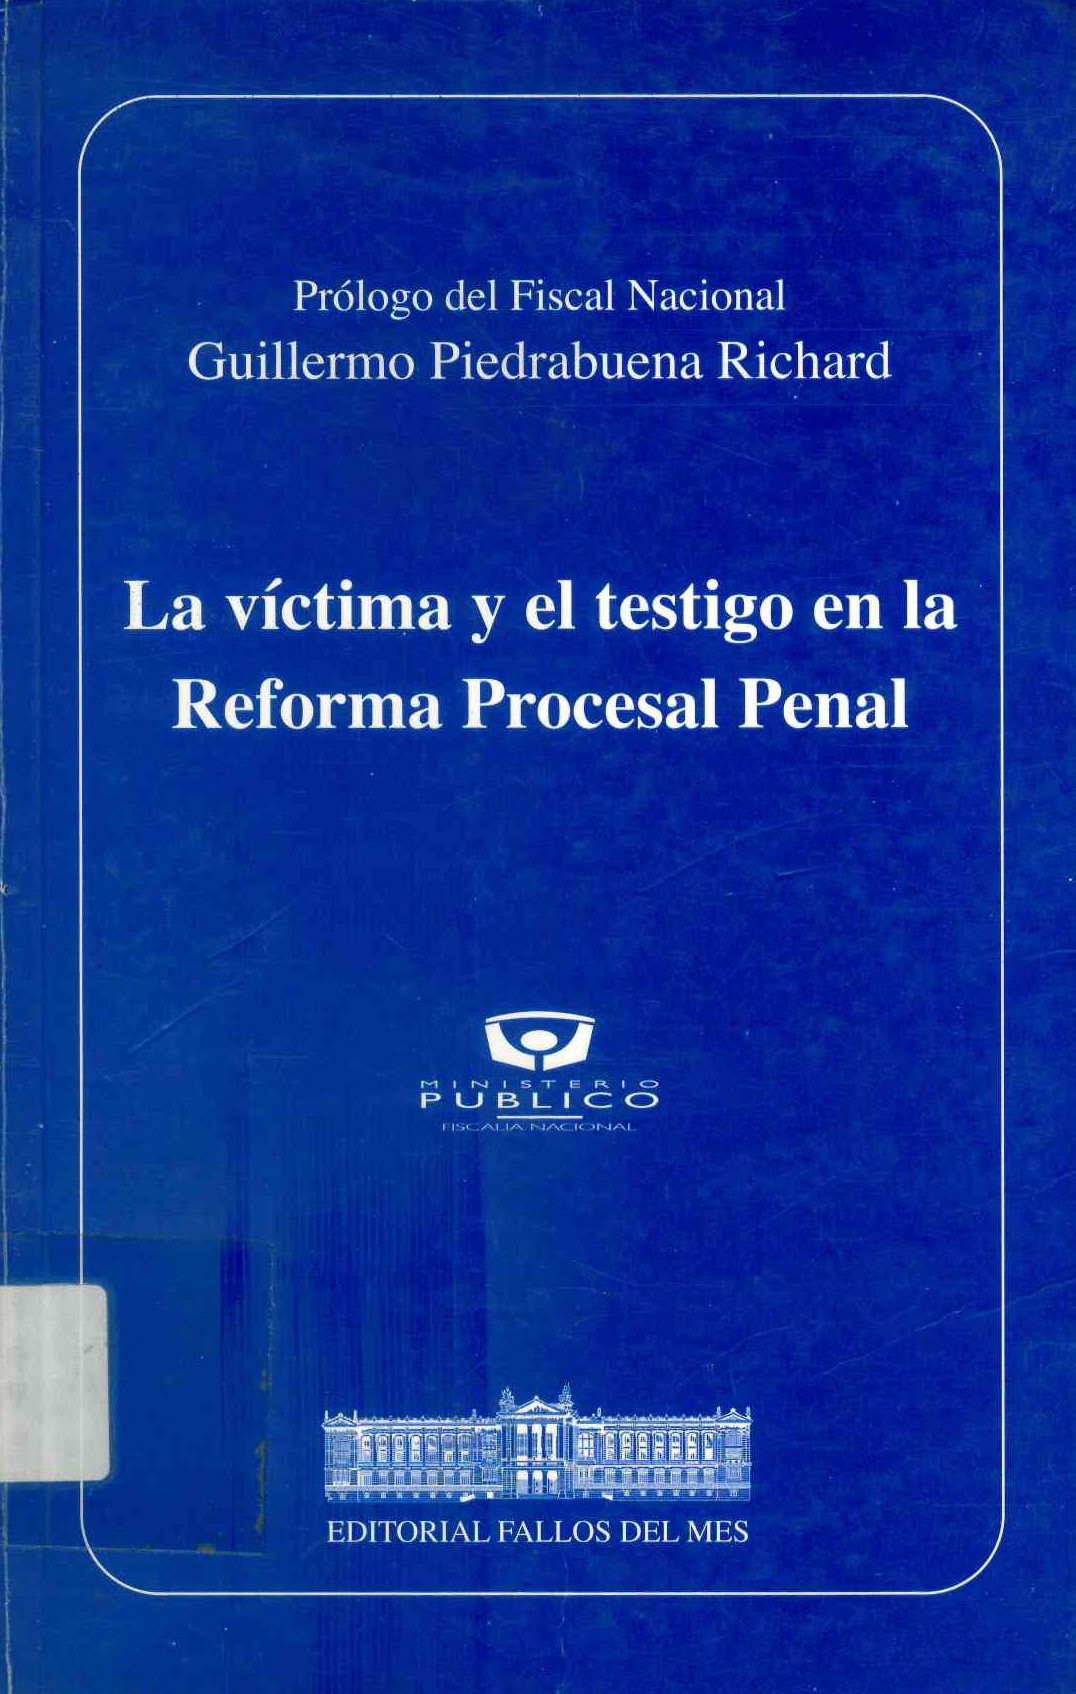 La víctima y el testigo en la reforma procesal penal